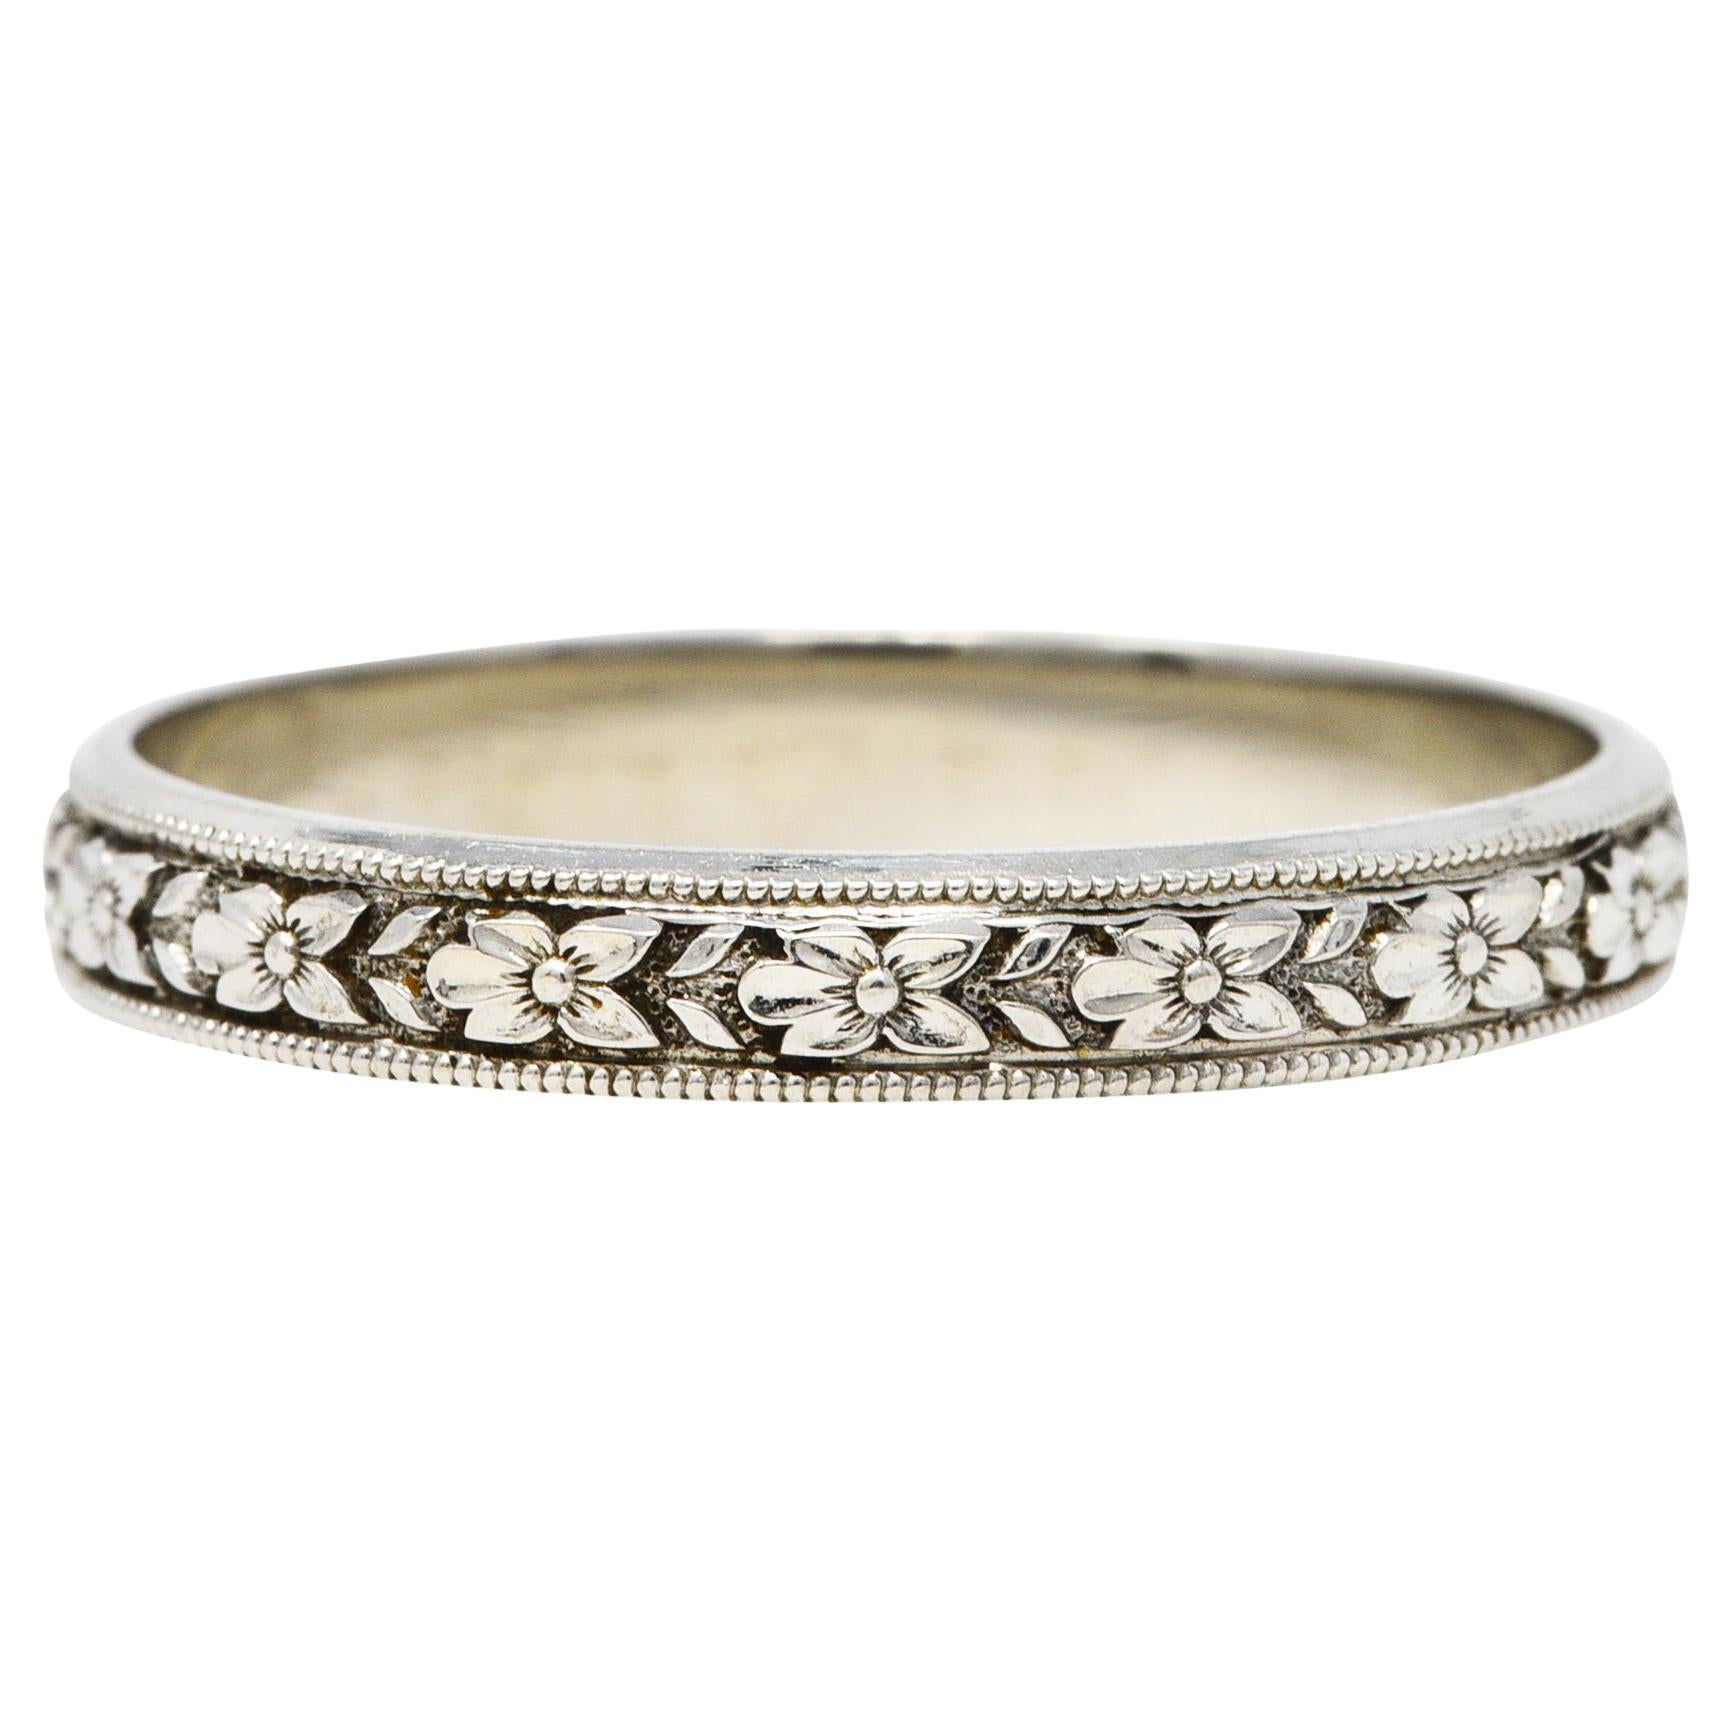 1930's Sohengrin 18 Karat White Gold Men's Wedding Band Ring